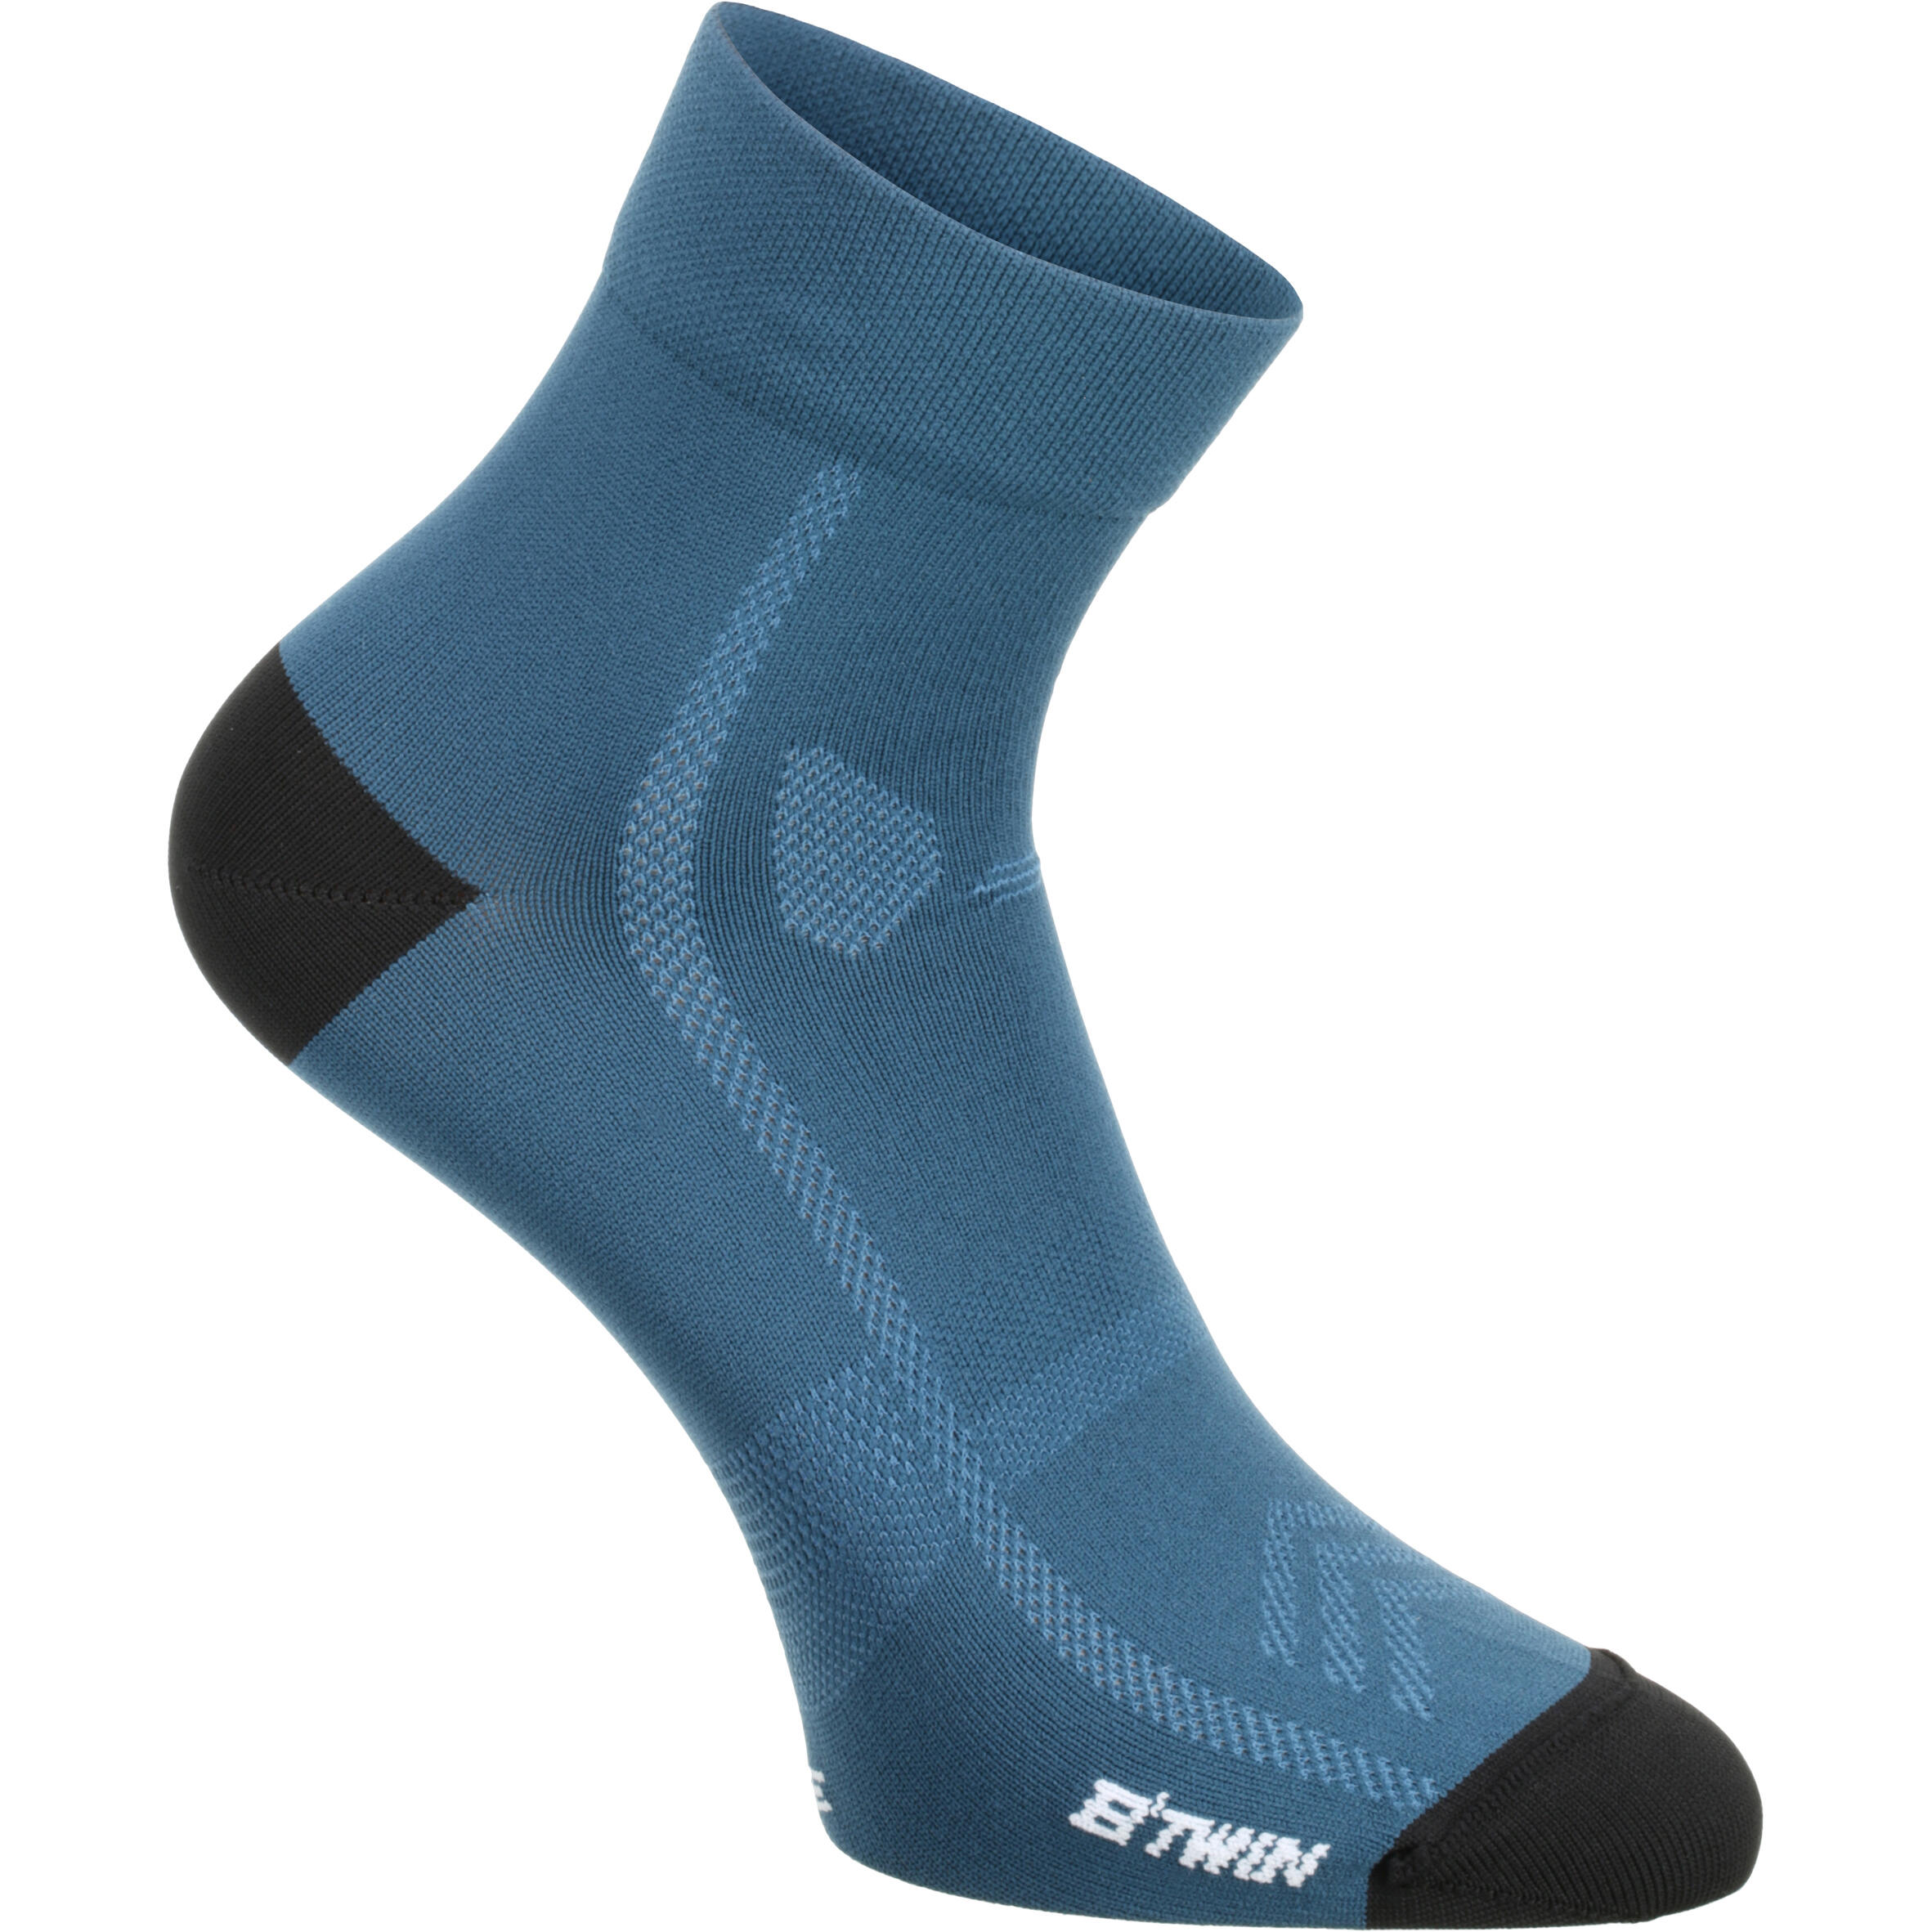 500 Cycling Socks - Dark Blue 1/8